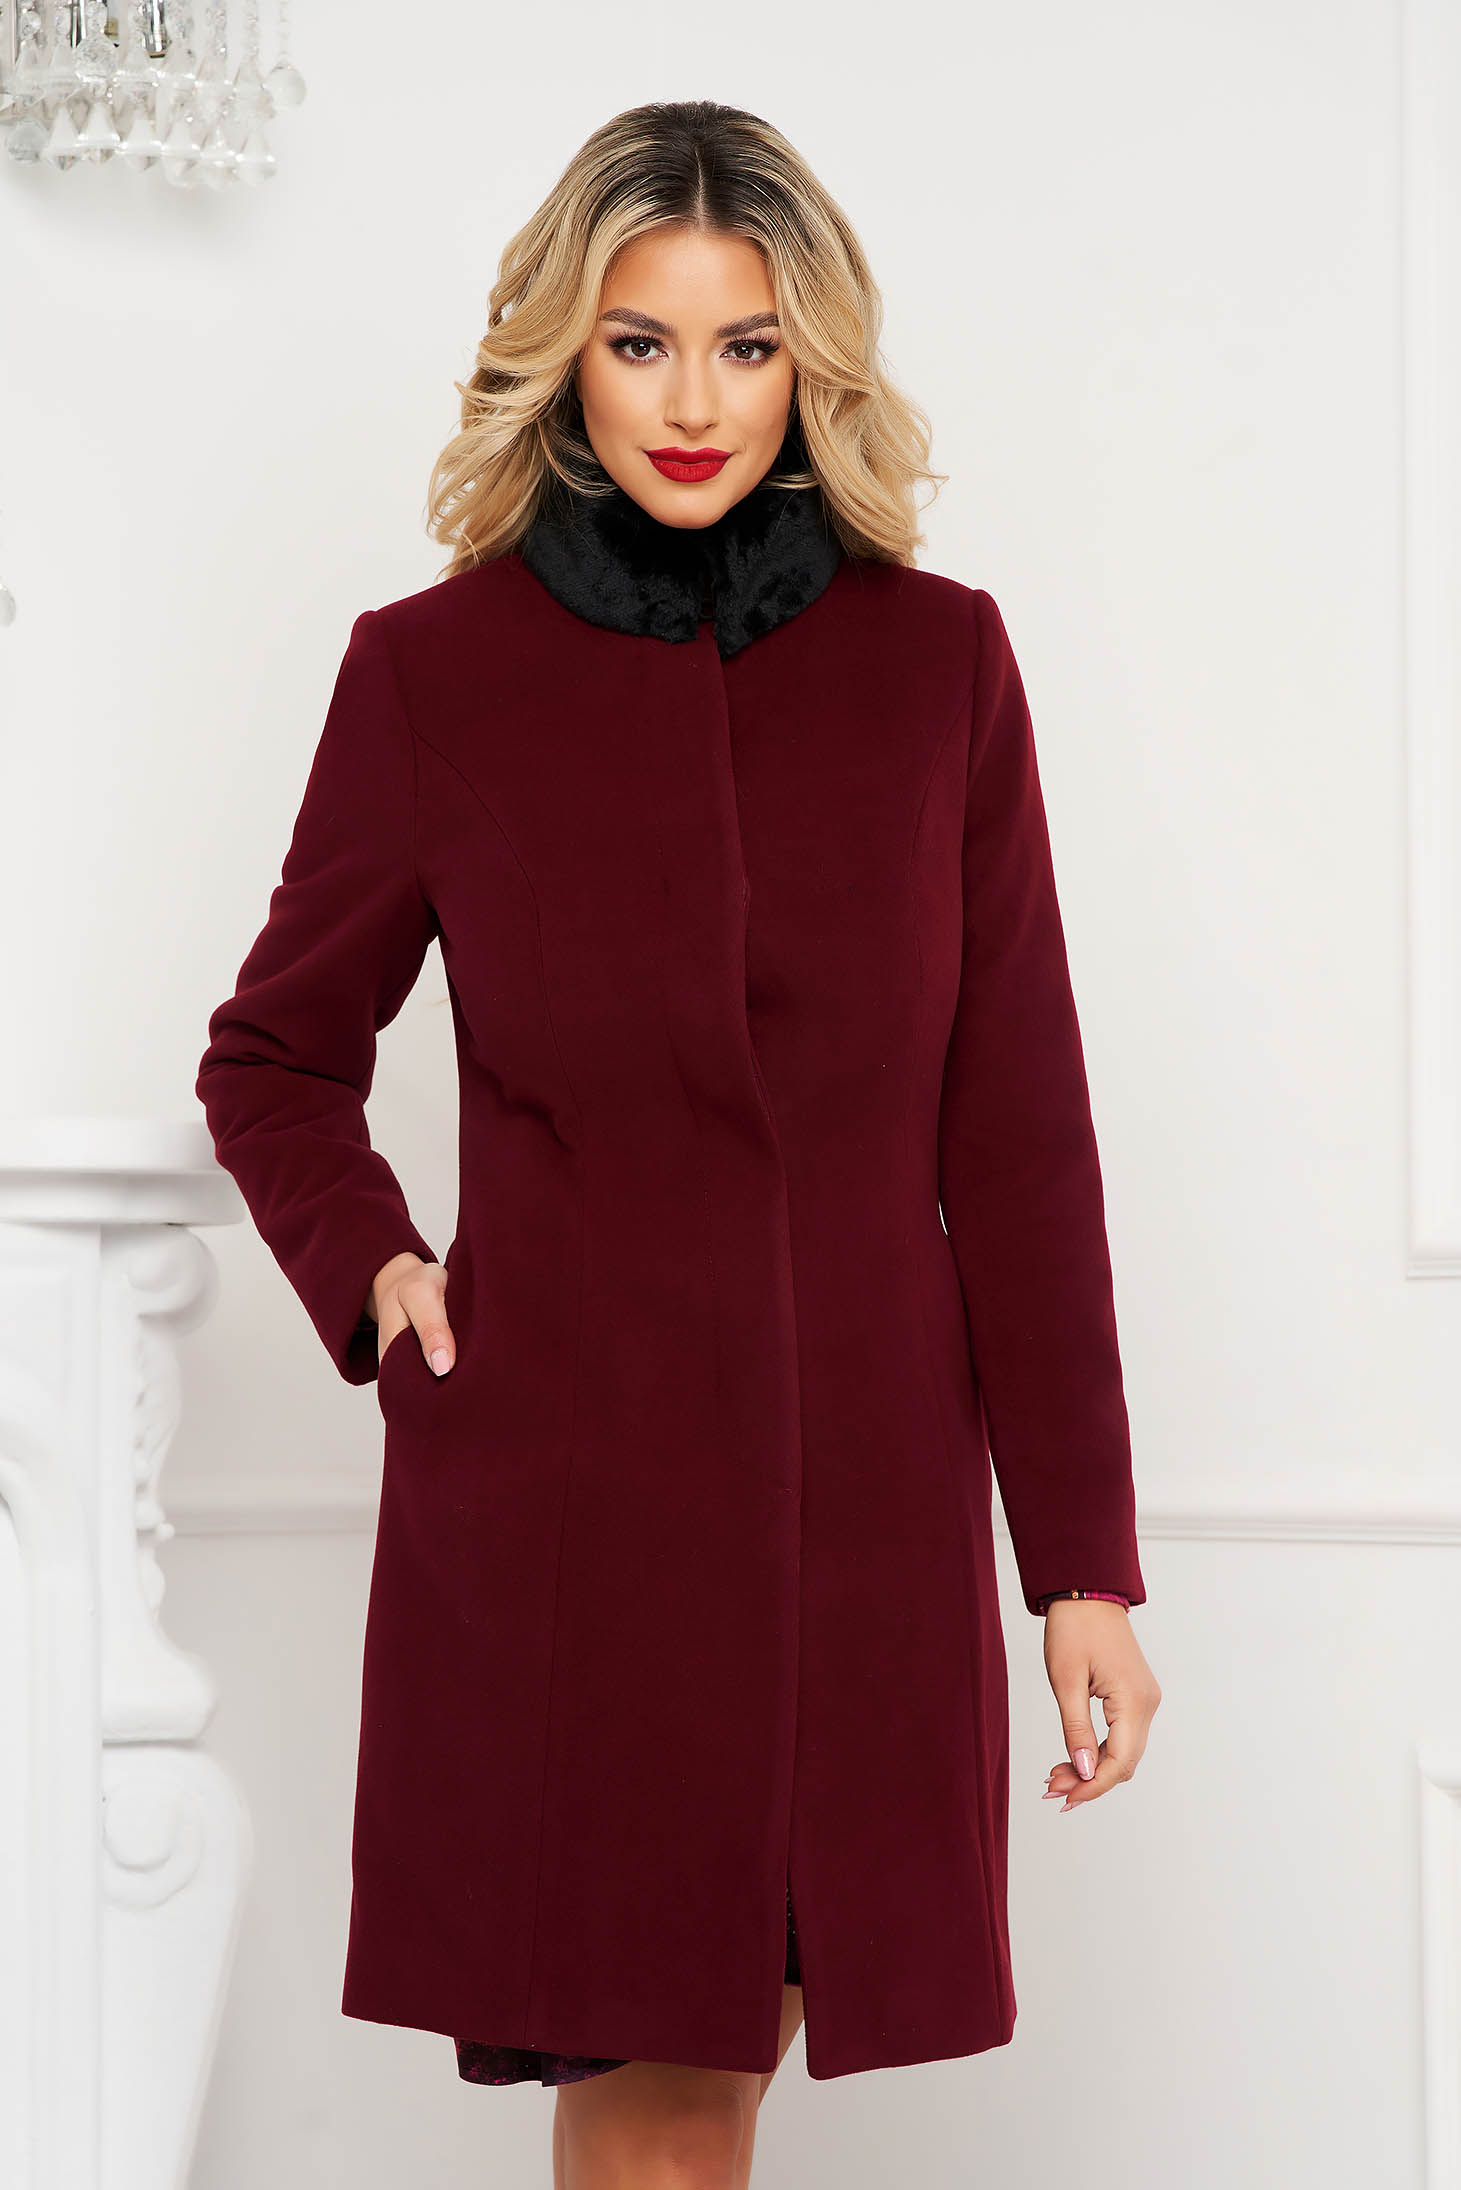 Burgundy coat tented fur collar elegant